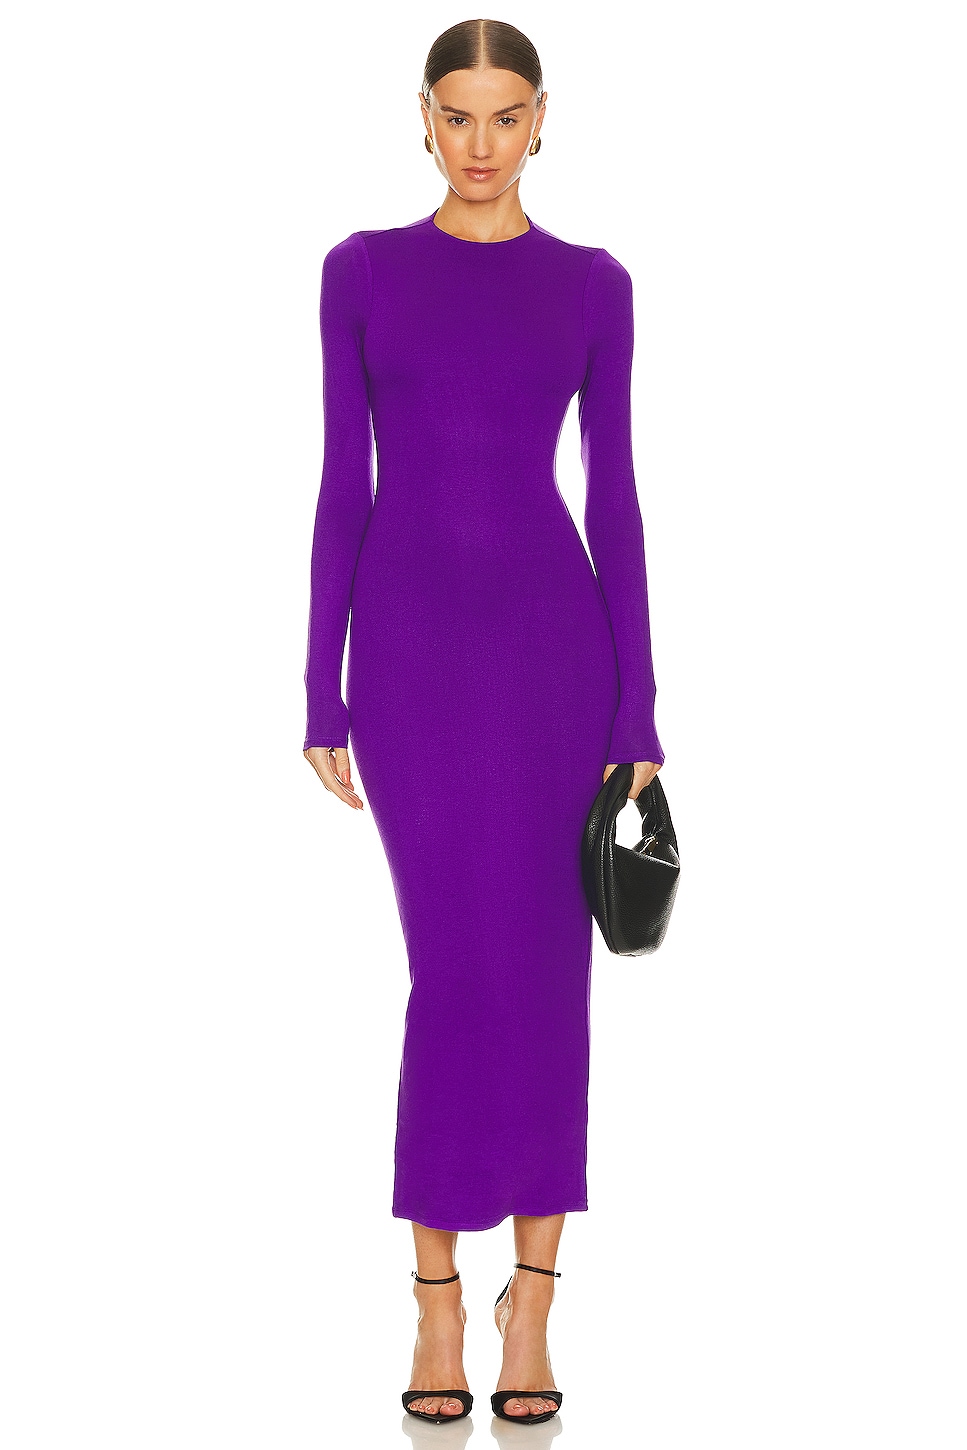 AFRM Juniper Maxi Dress in Deep Violet | REVOLVE